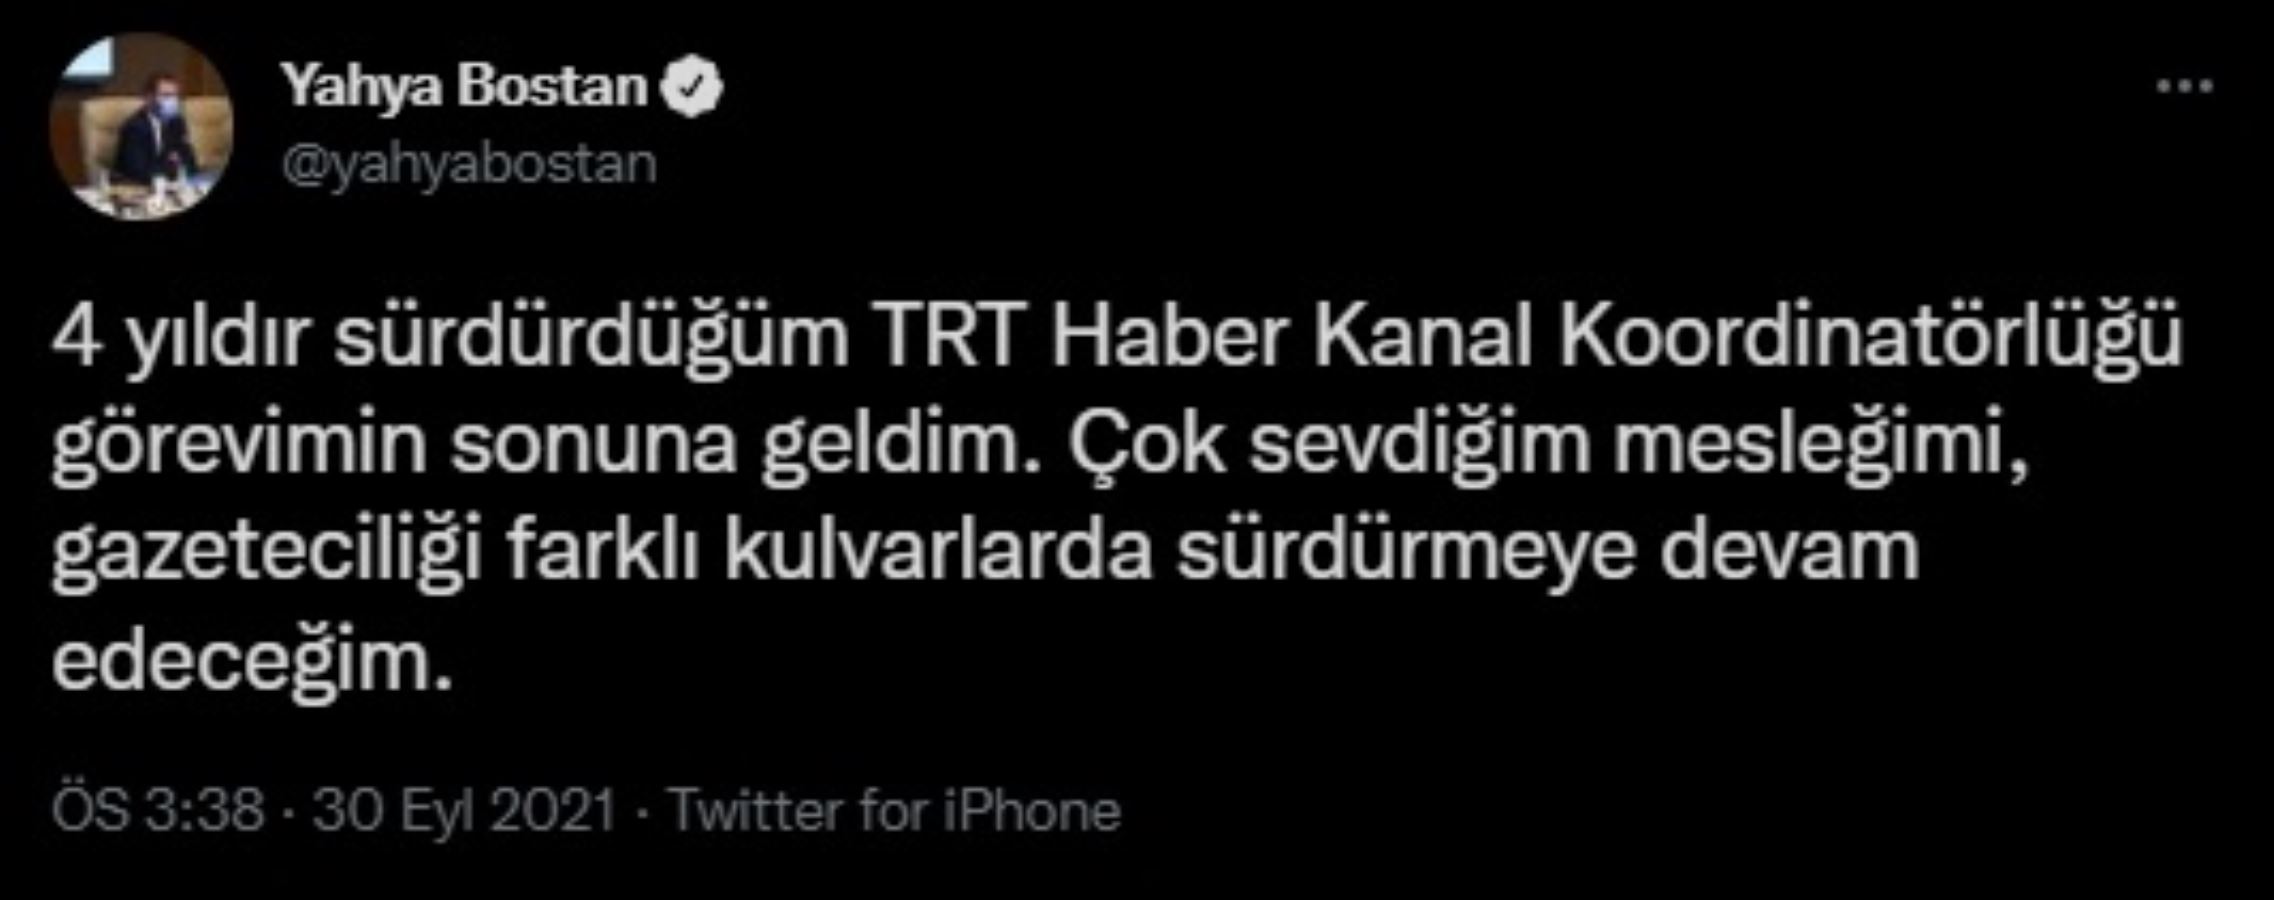 TRT'de üst düzey ayrılık: Sosyal medyadan duyurdu